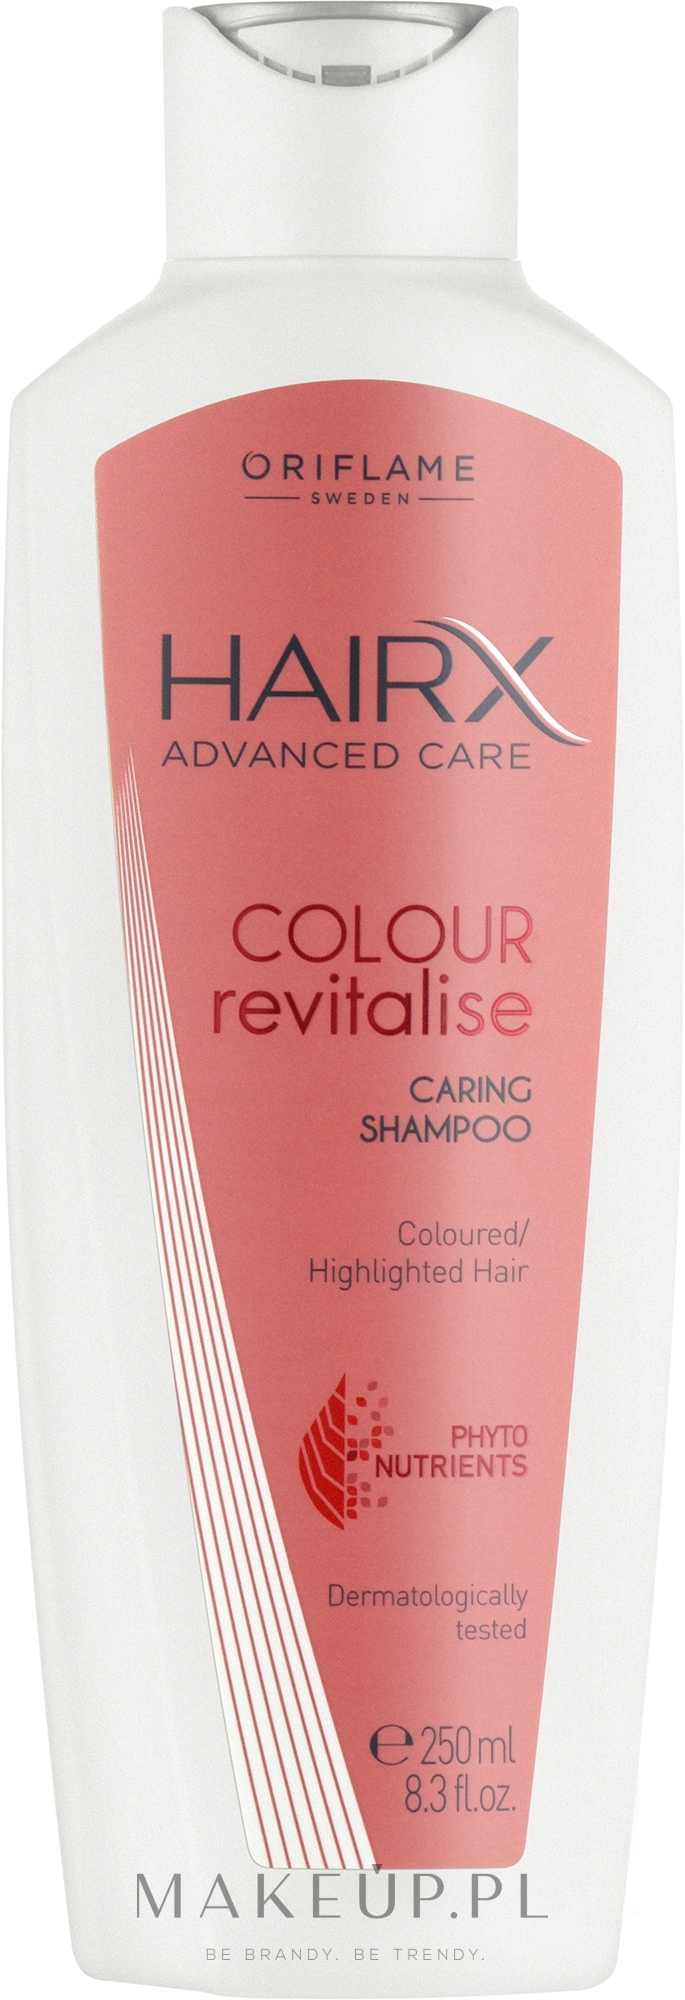 szampon do włosów farbowanych oriflame color proteck